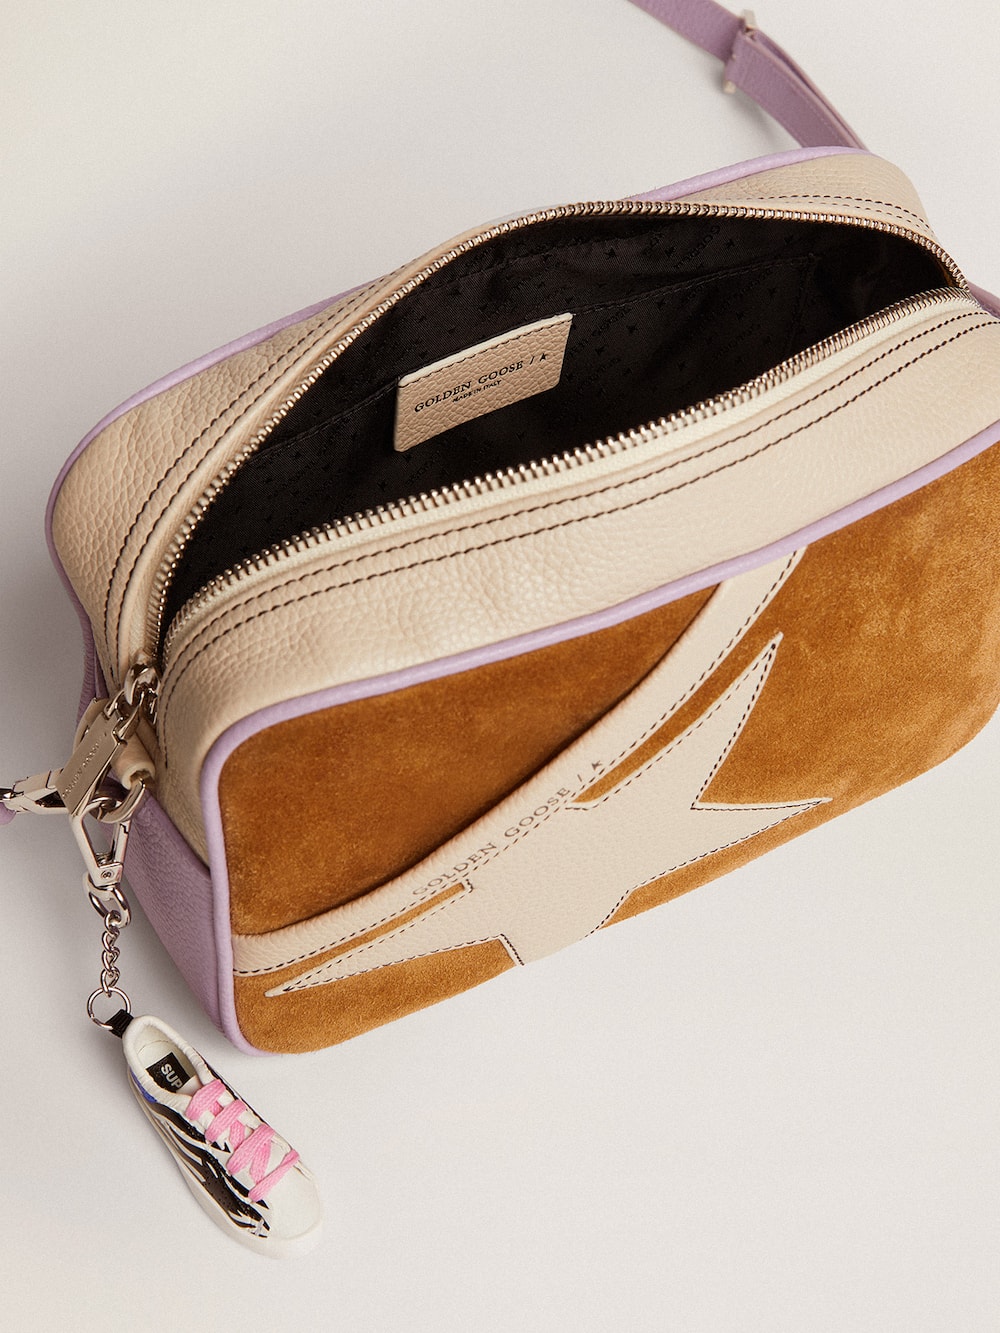 Golden Goose - Bolso Star Bag de piel martillada blanca y lila con aplicación de ante color cámel y estrella de piel blanca con costuras en contraste in 